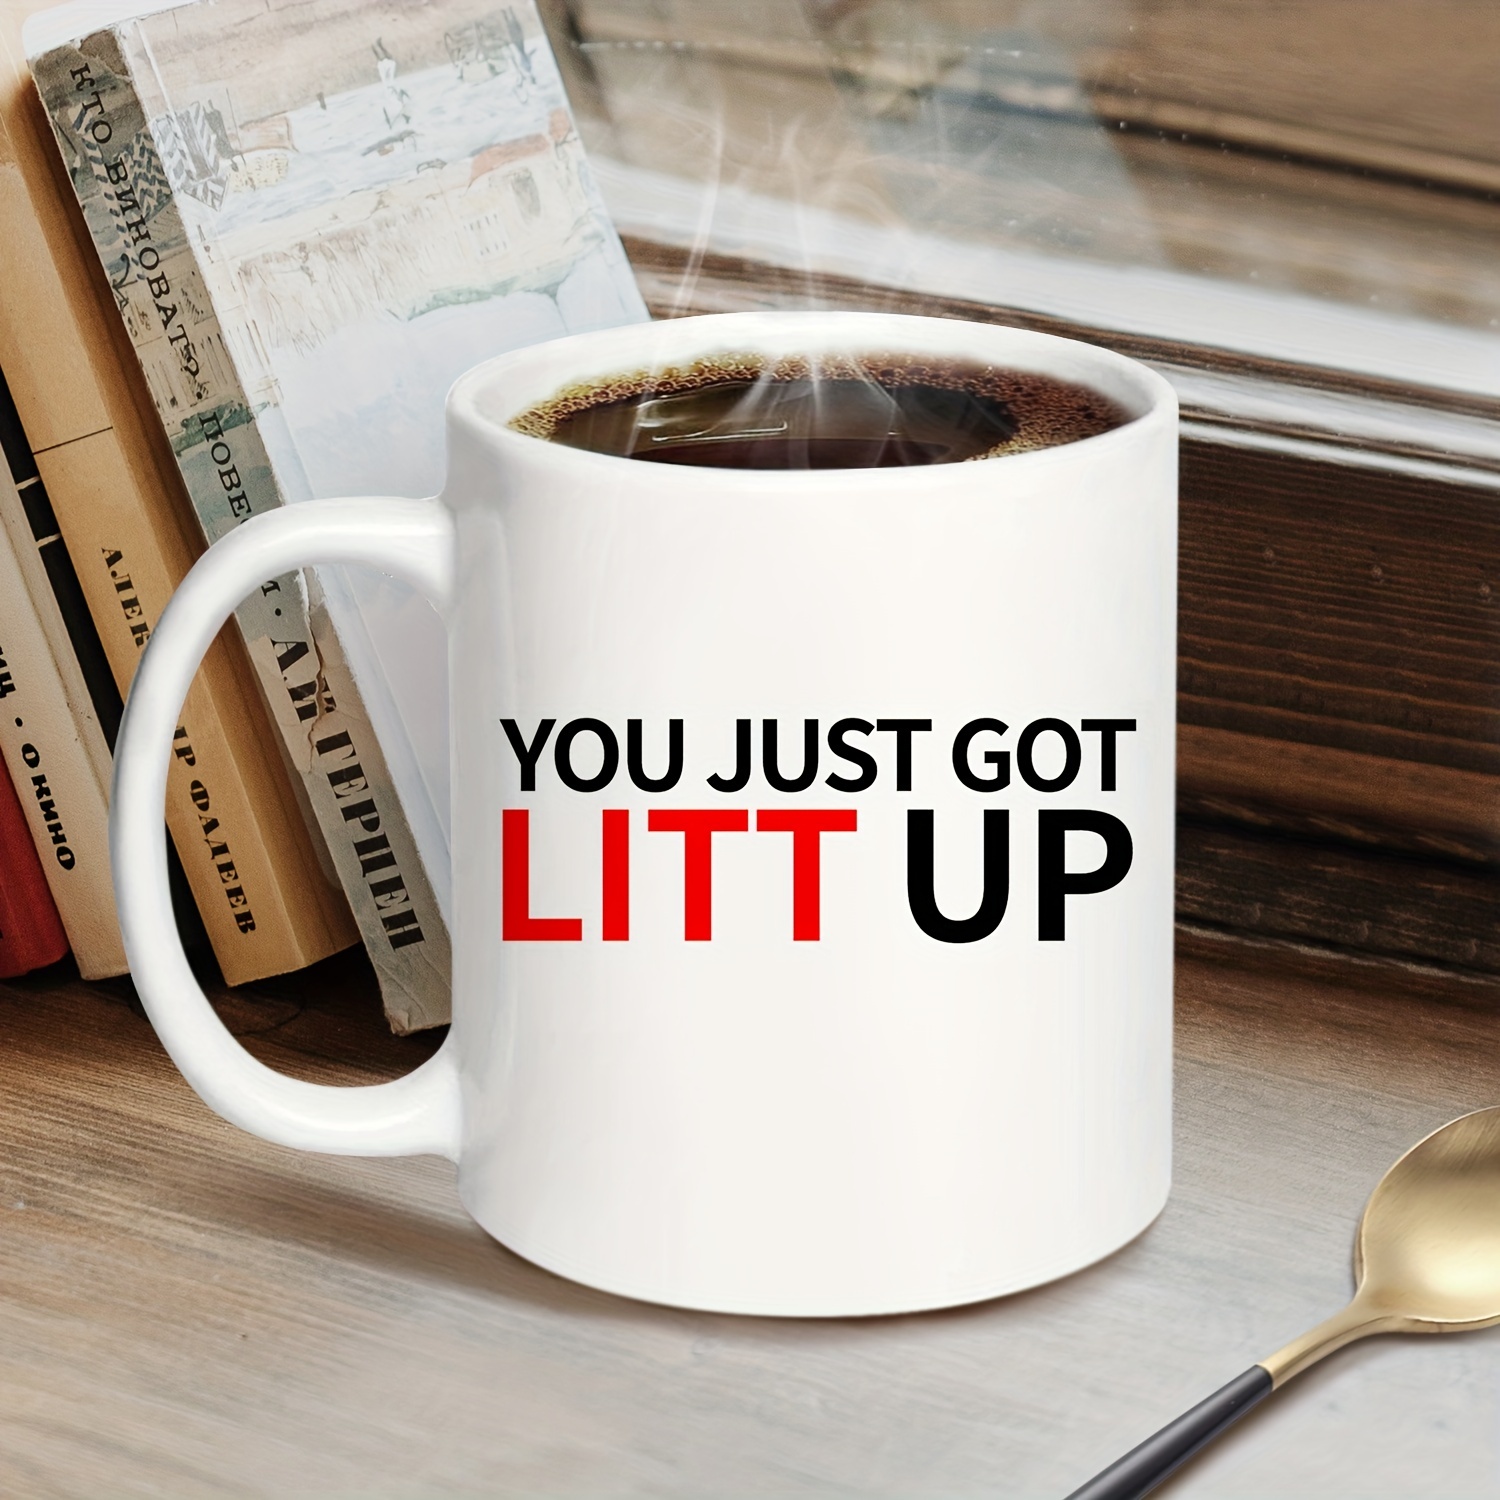 You Just Got Litt Up! Mug from Suits